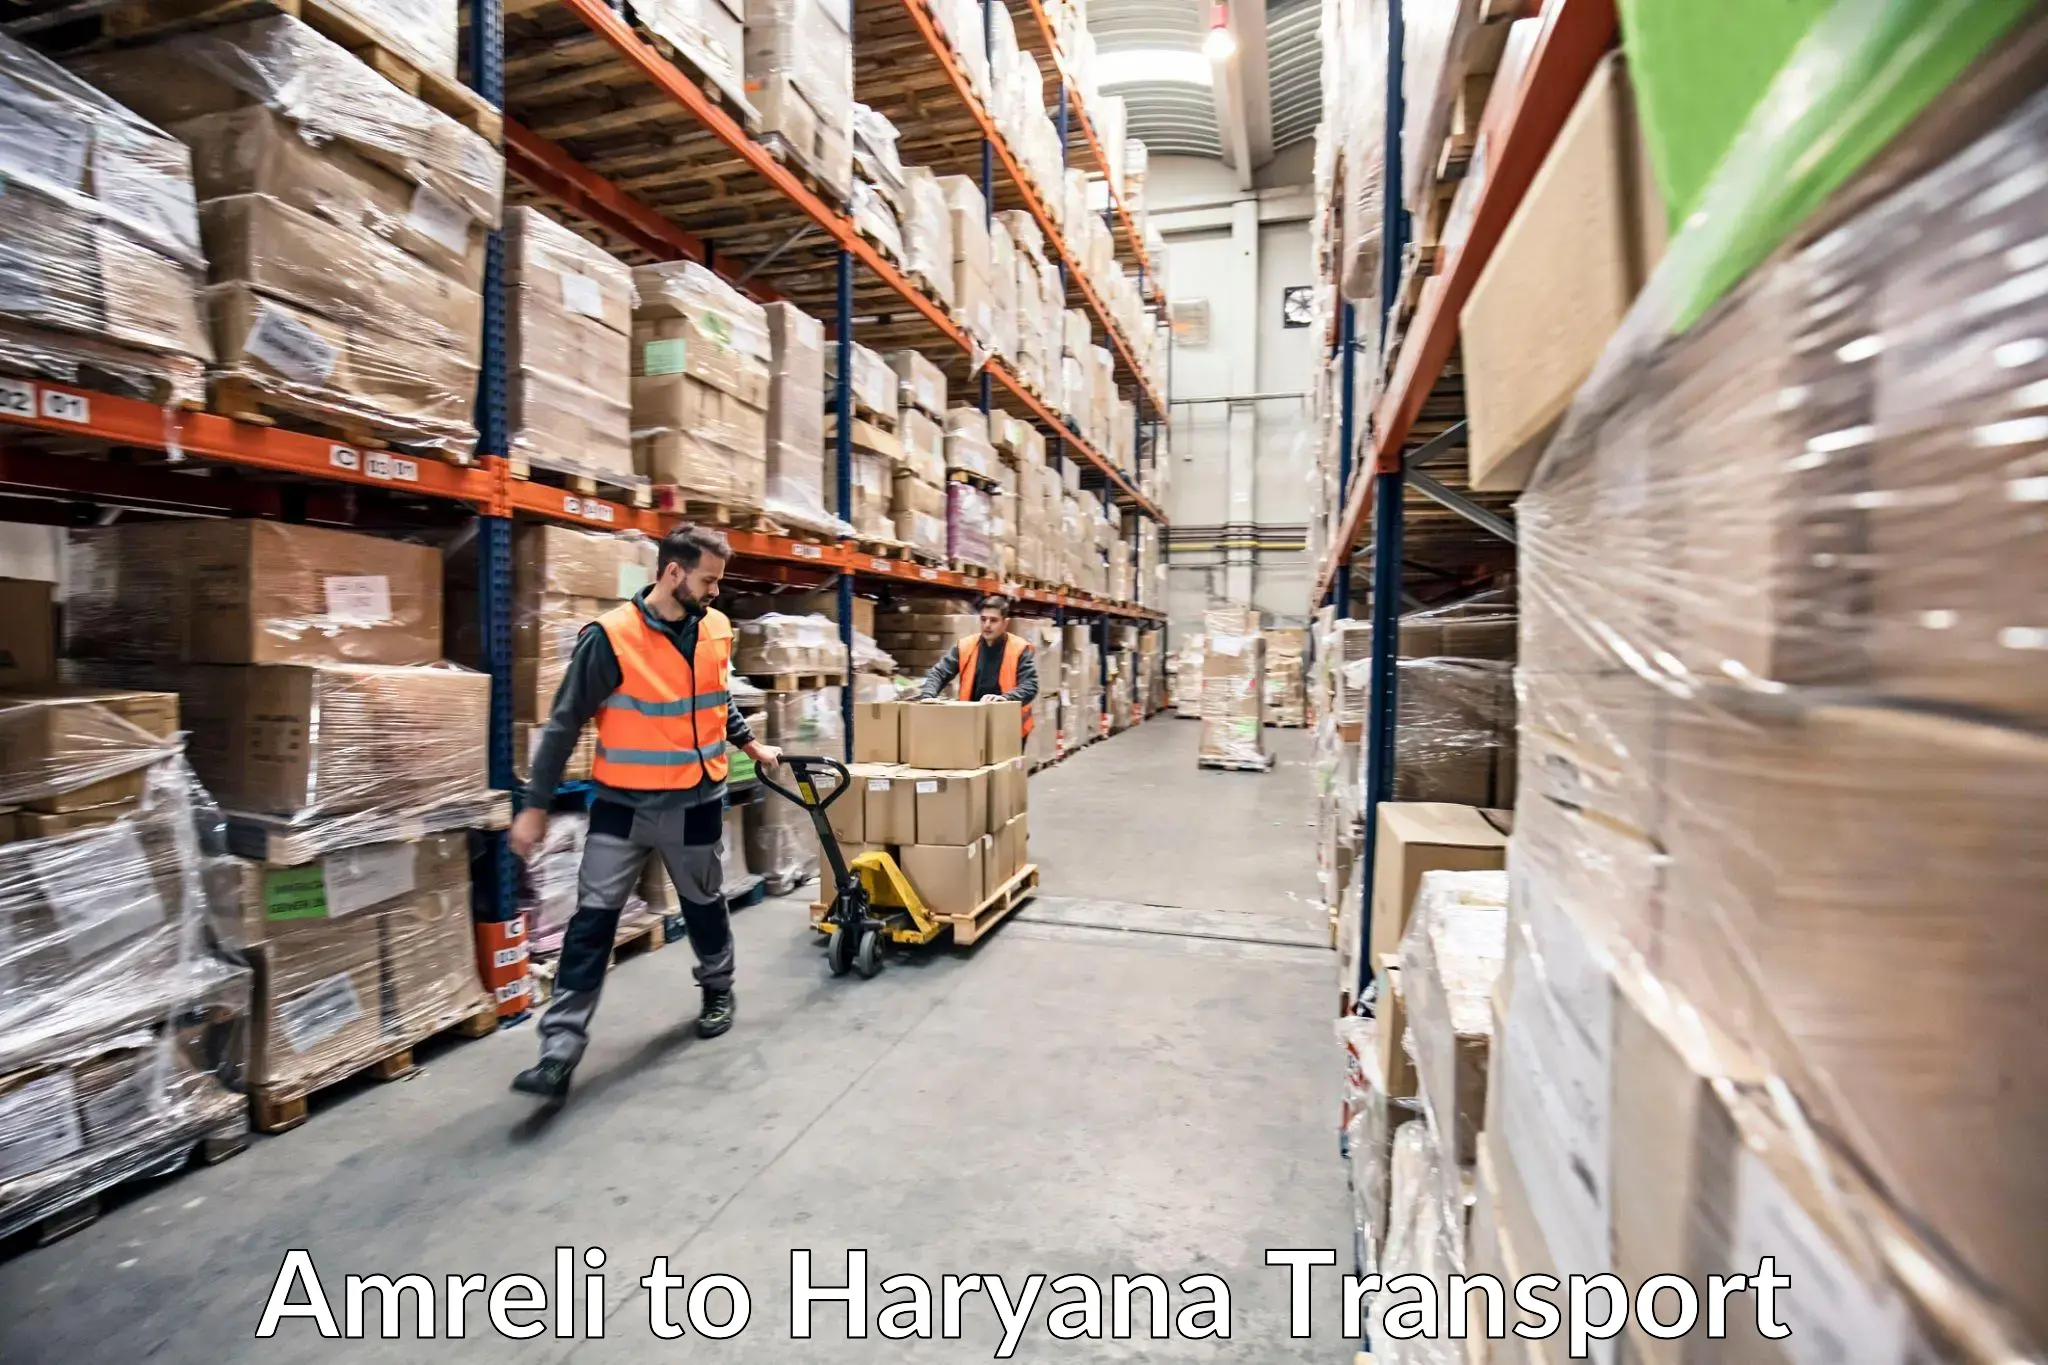 Cargo transport services Amreli to Ambala